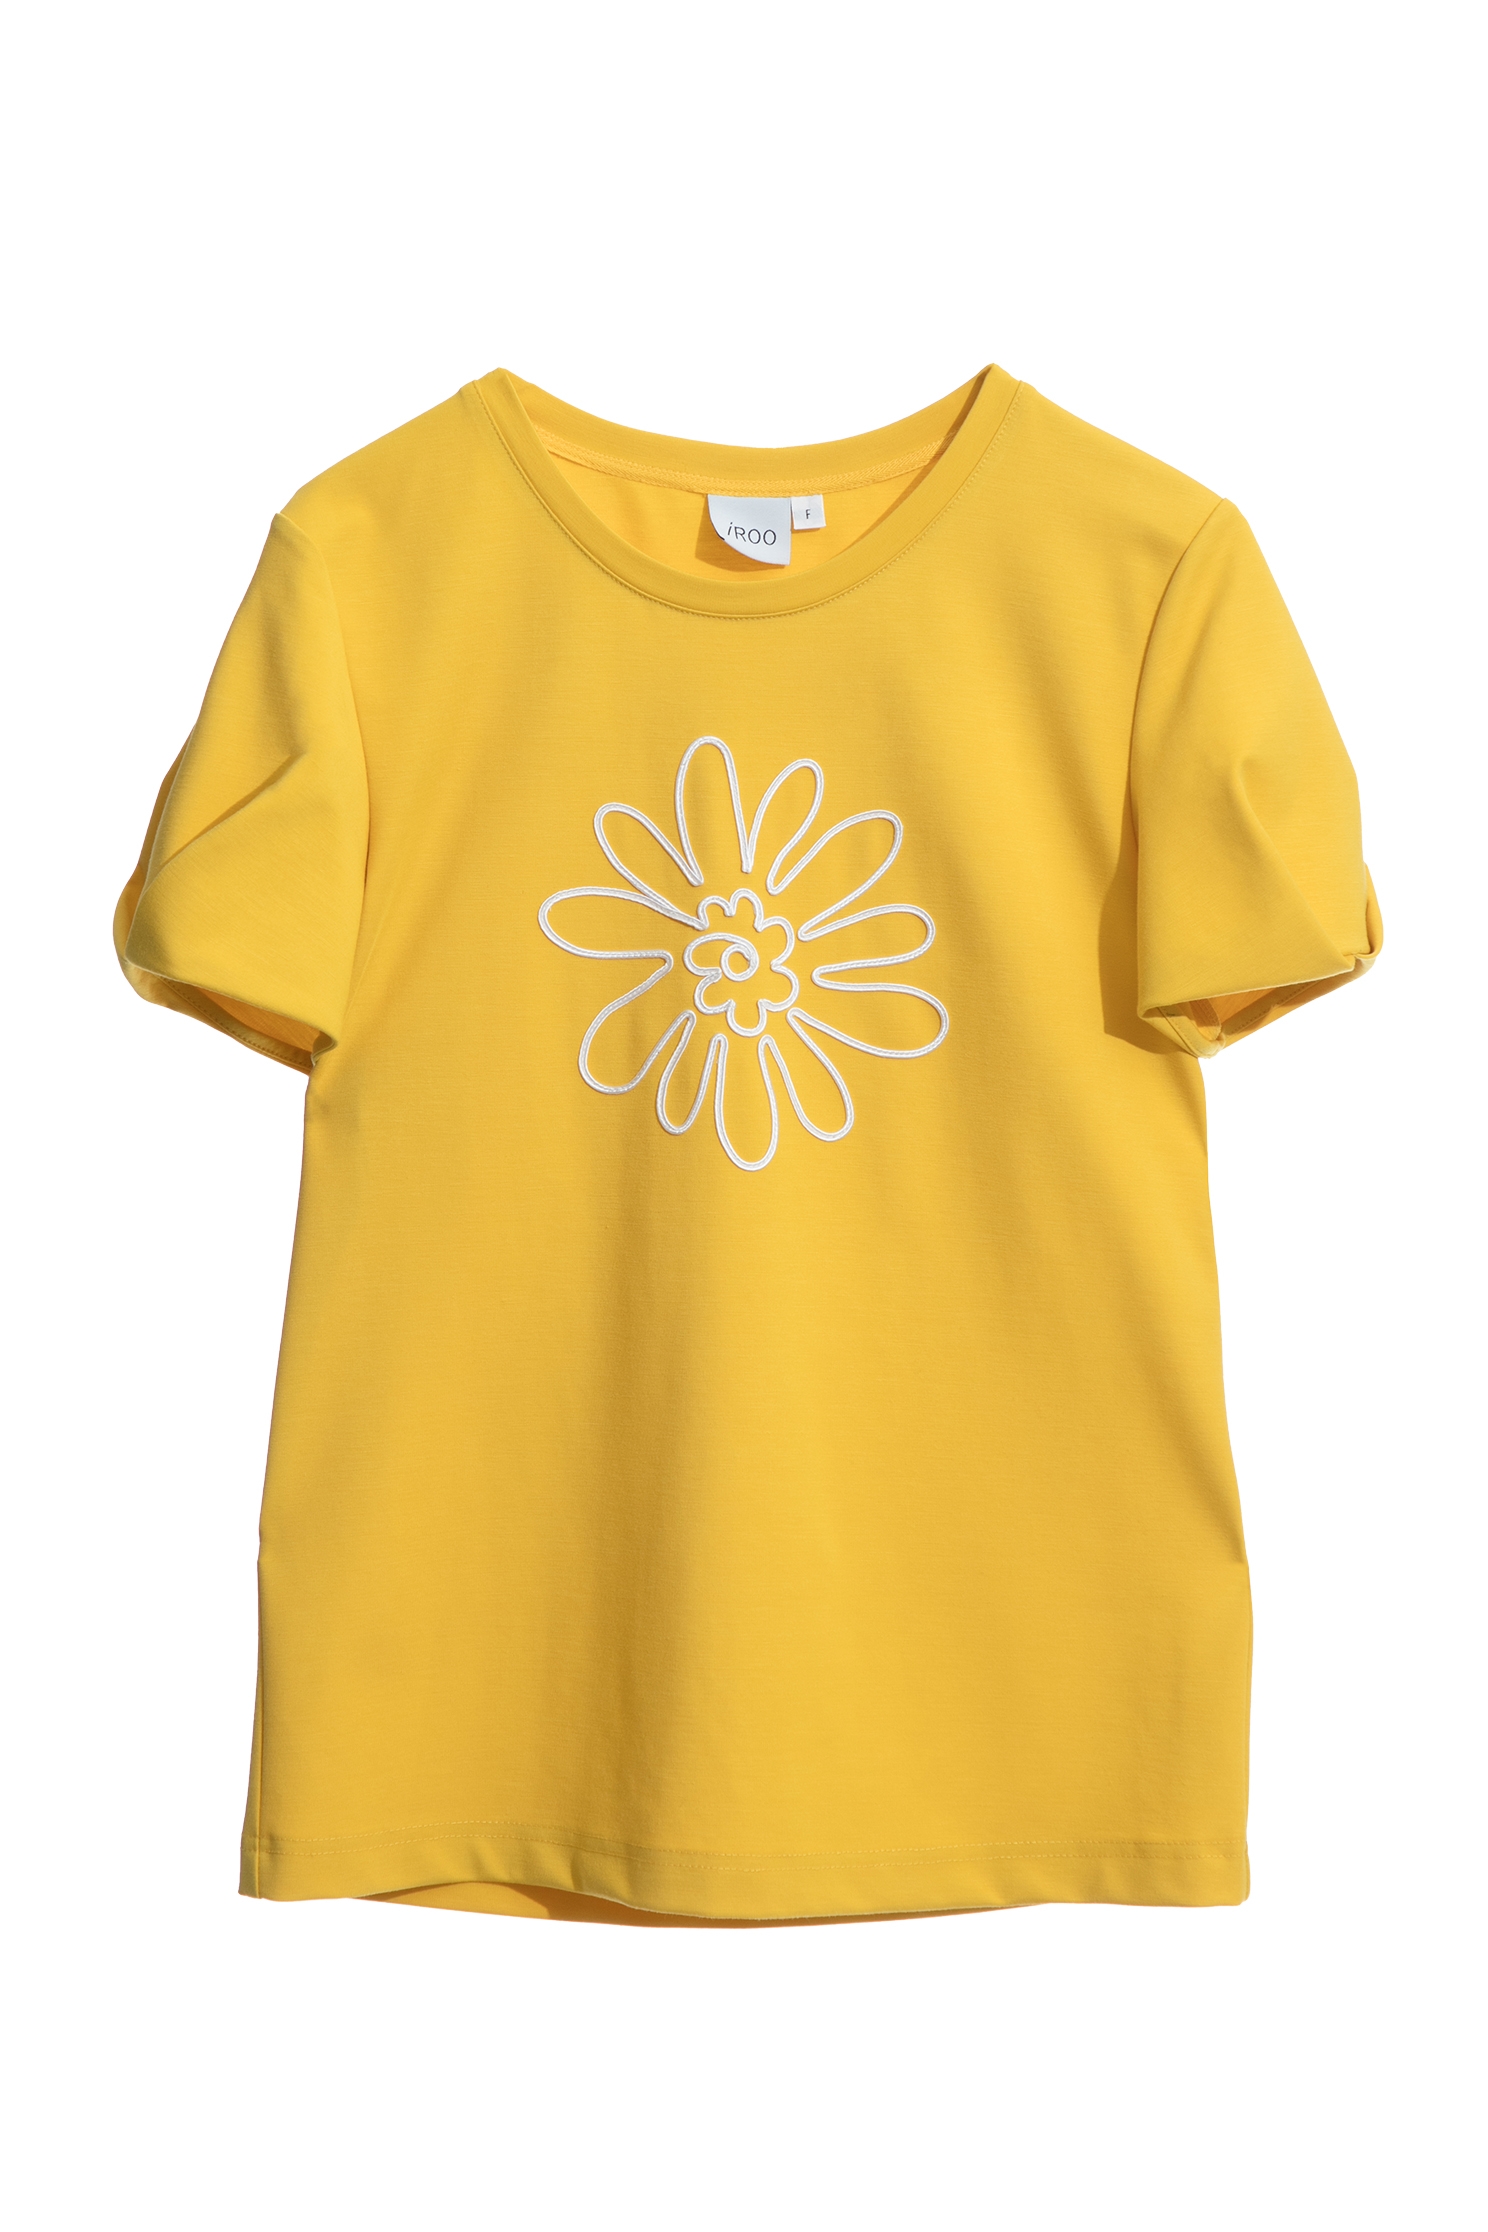 花粉黃單品上衣花粉黃單品上衣,T-Shirt,上衣,人氣商品,派對特輯,秋冬穿搭